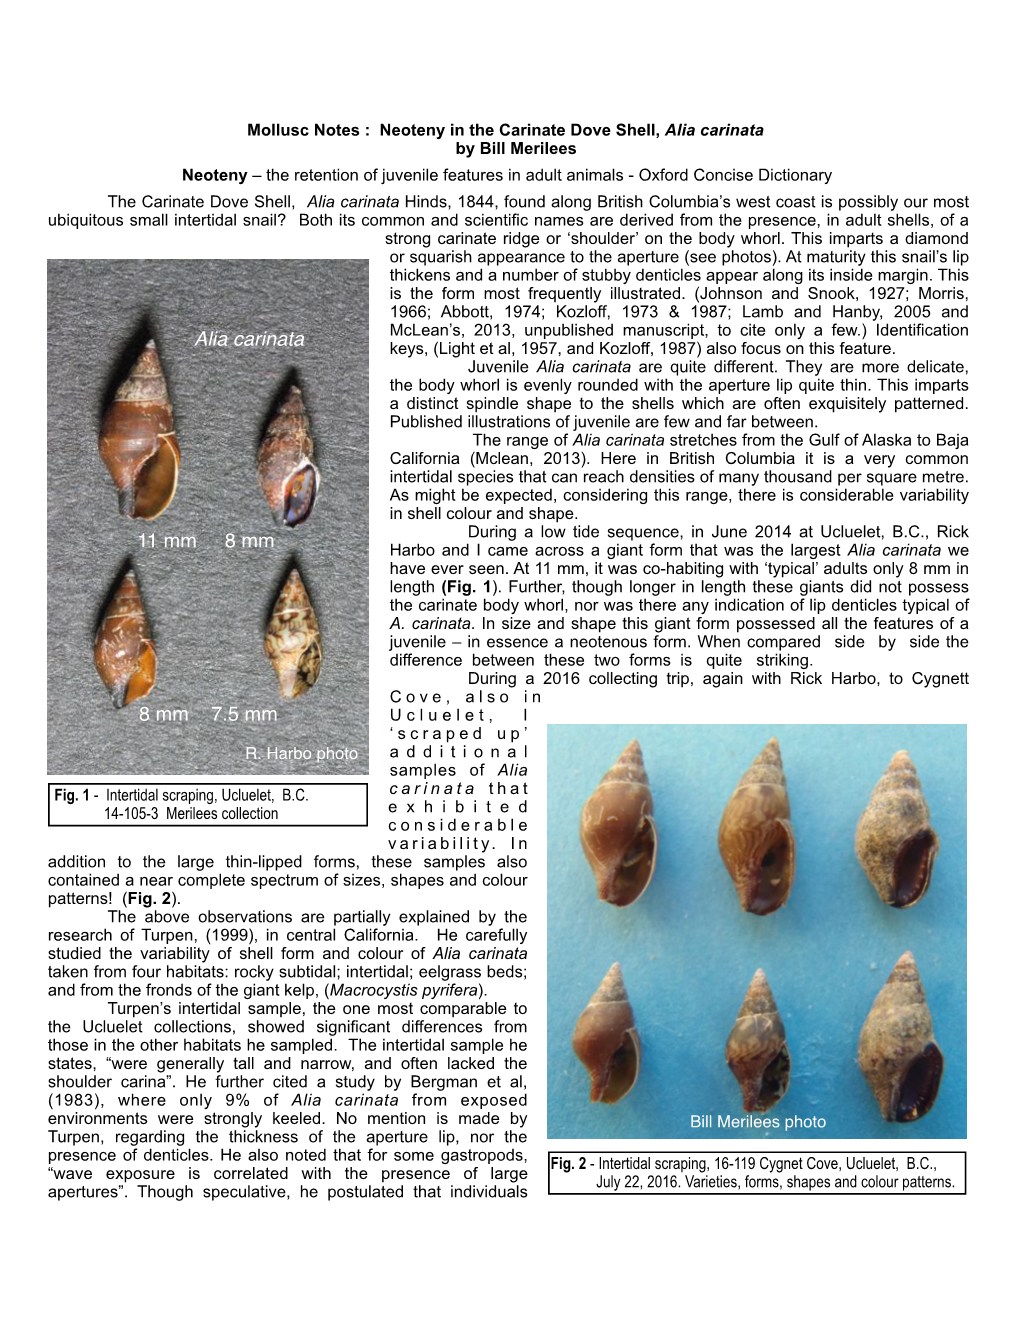 Neoteny in the Carinate Dove Shell, Alia Carinata